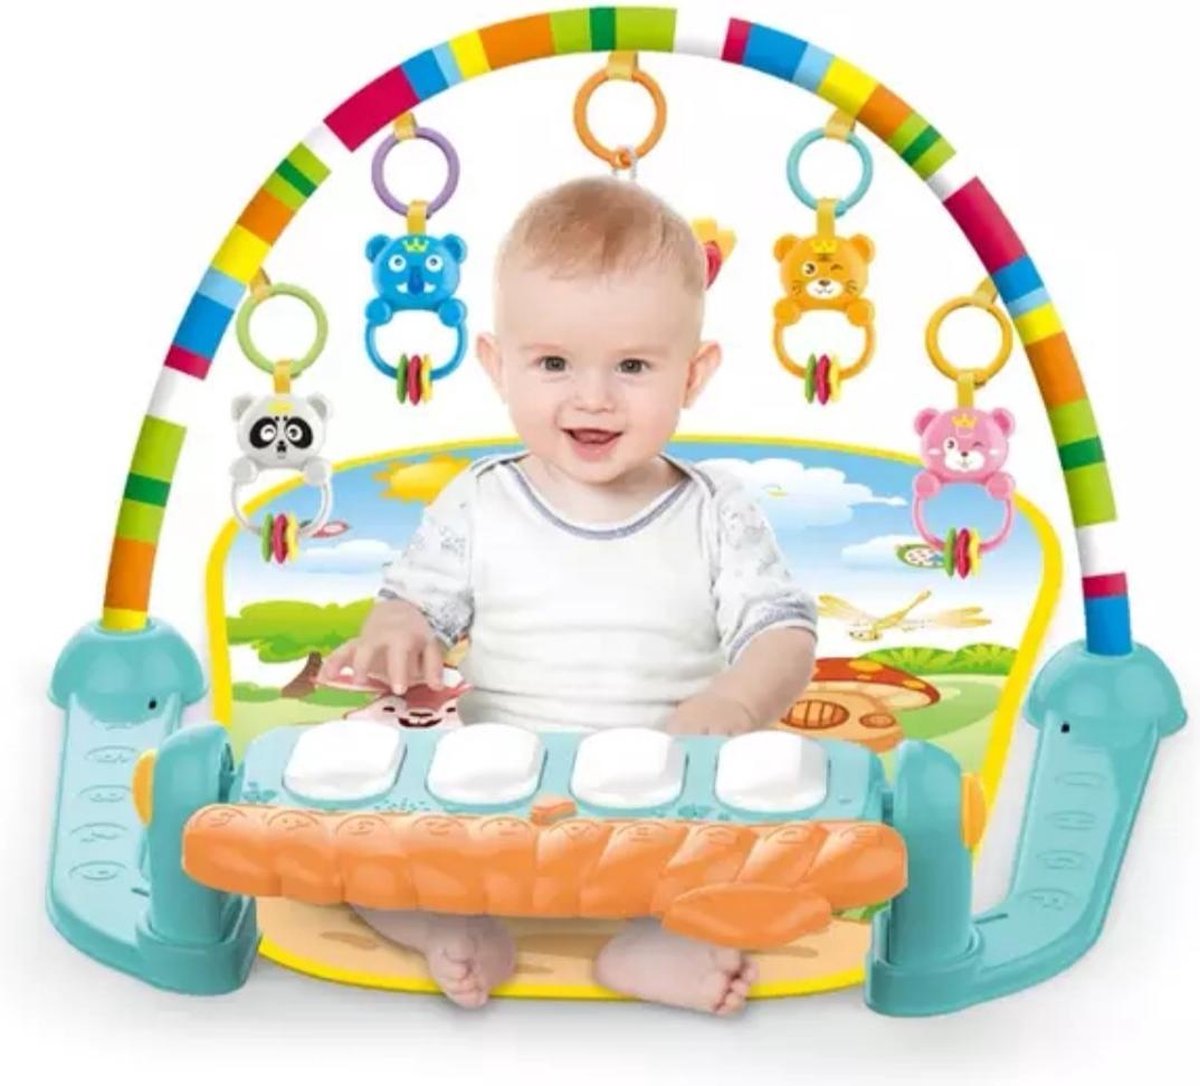 V-Toys 3 in 1 babygym - Activity gym - Baby speelkleed met boog - Speelmat voor kind - Activity center